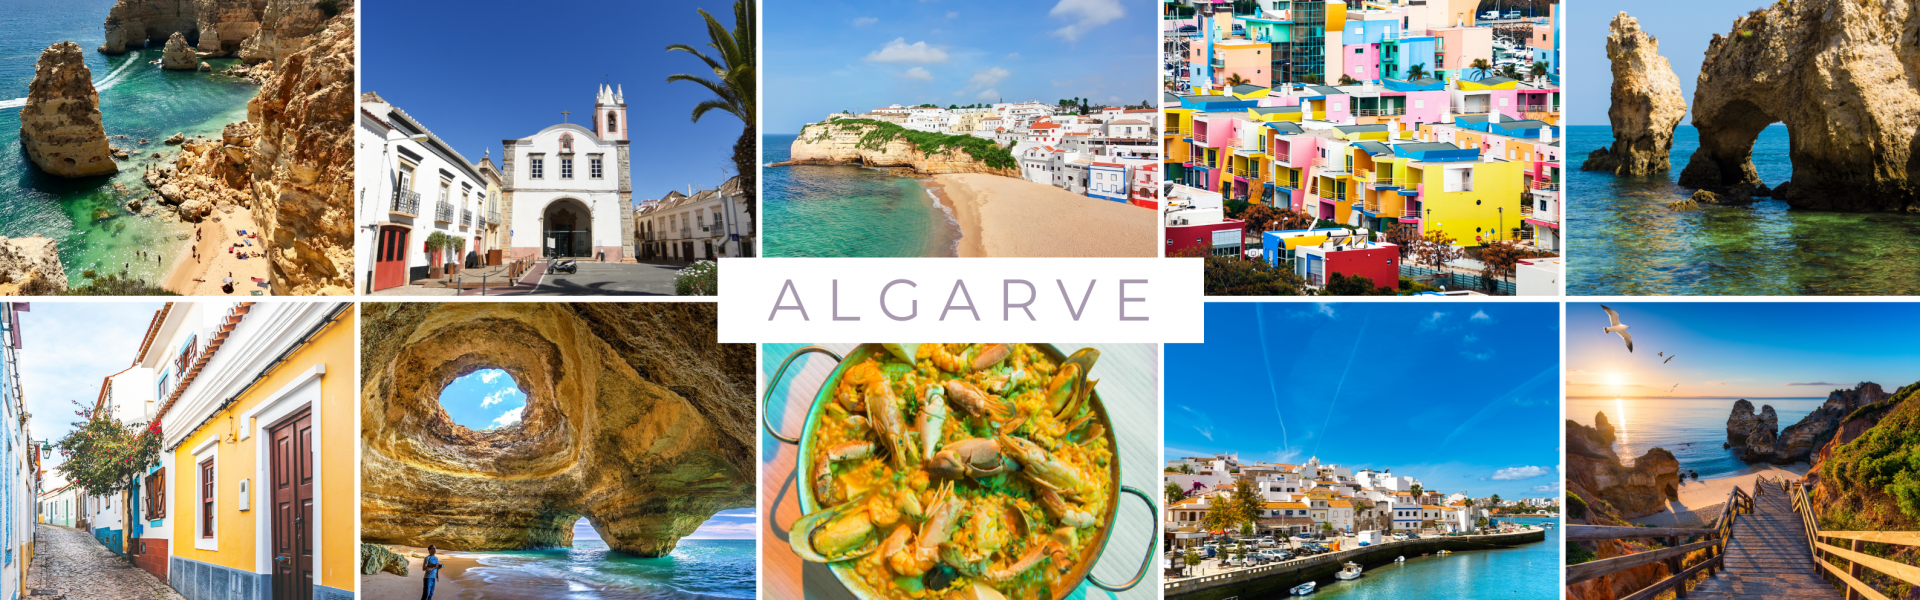 Algarve, darunter Strände, bunte Häuser, historische Gebäude und traditionelle Gerichte.